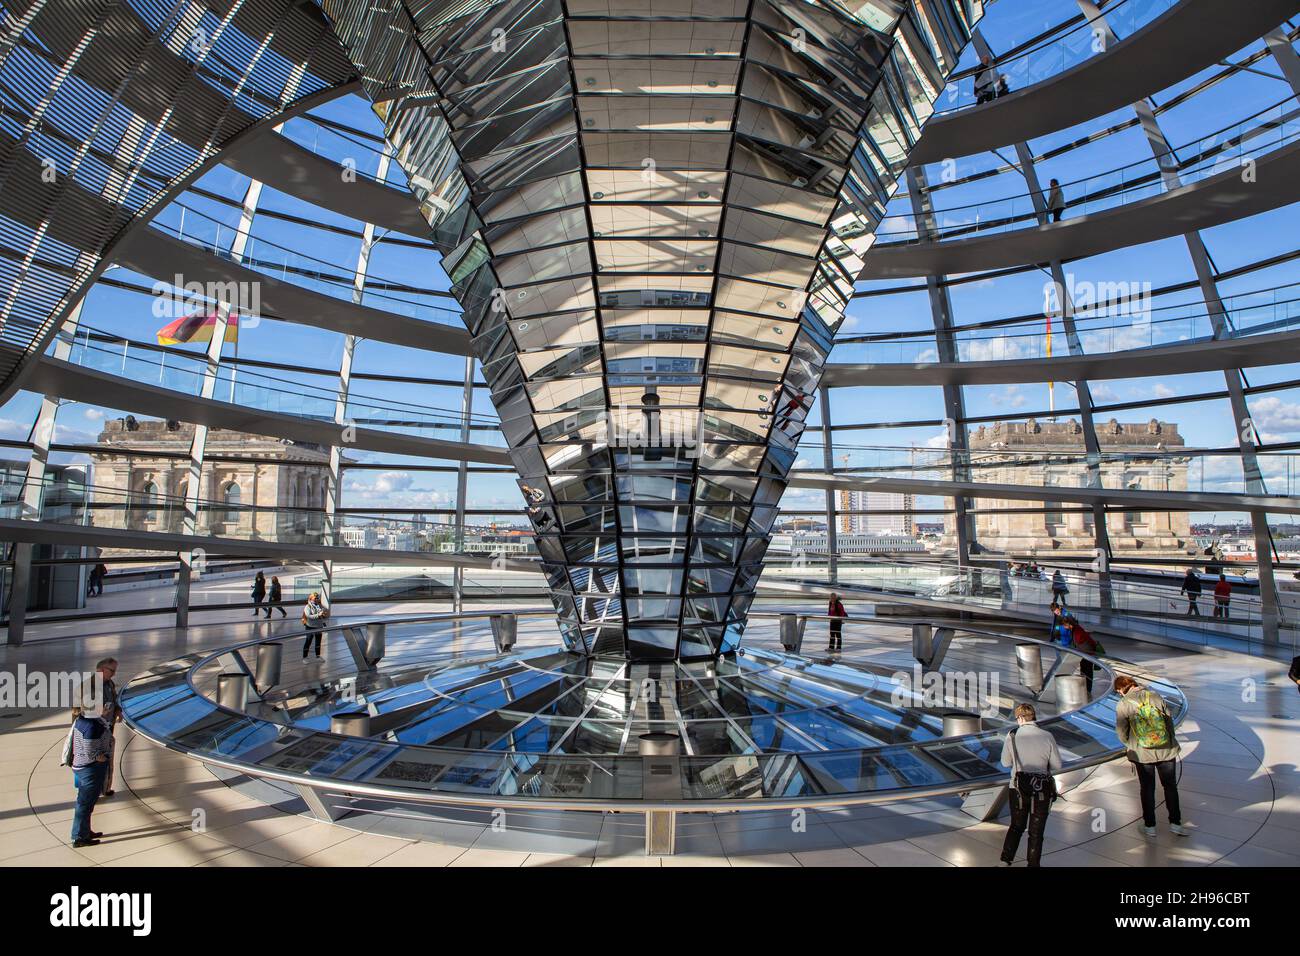 La cupola del Reichstag sul tetto del Bundestag tedesco a Berlino Mitte dall'interno. Architettura moderna in alluminio, vetro e specchi. Foto Stock